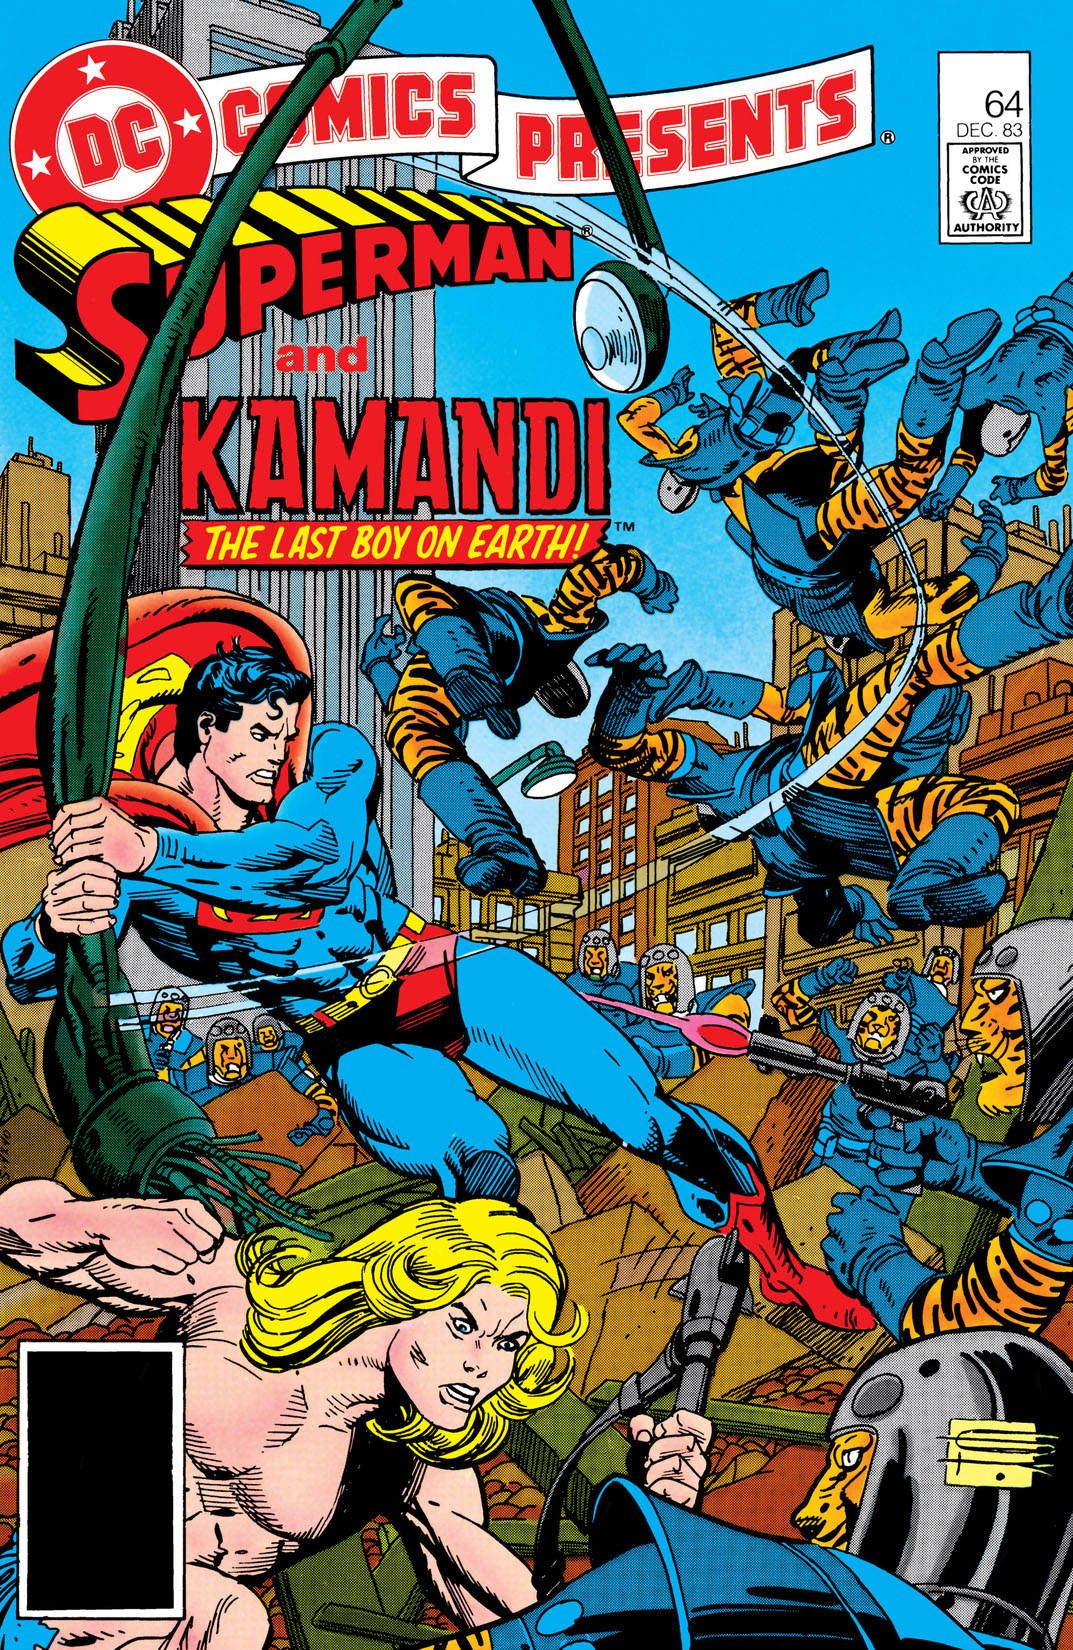 DC Comics Presents (1978-1986) #64 preview images